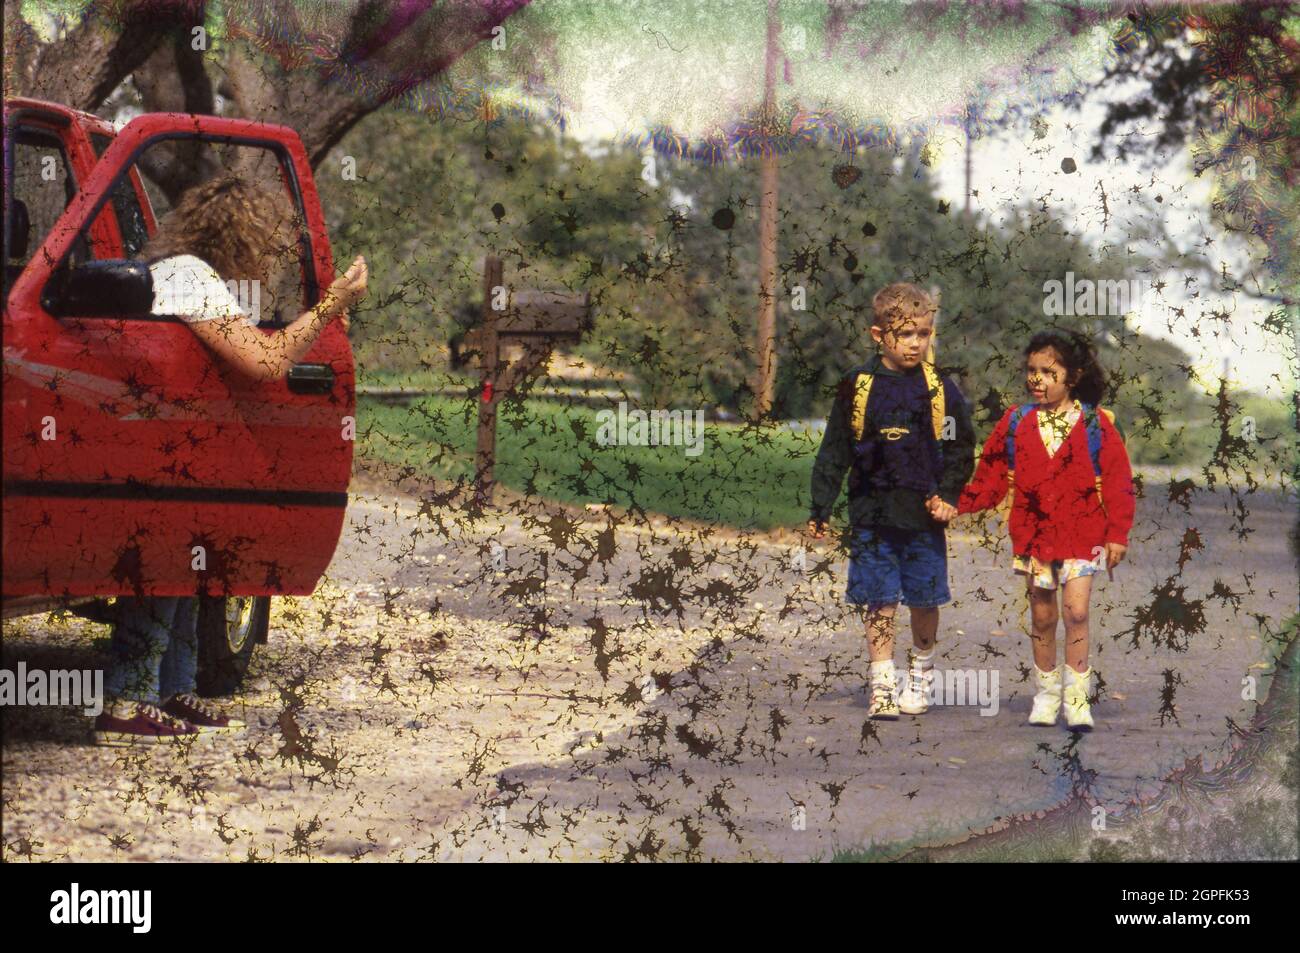 Austin Texas USA, um 1994: Fremde Gefahr: Drittklässler, die von der Schule nach Hause gehen, vermeiden einen Fremden im Auto, Foto-Illustration. HERR Ei-0319-321 ©Bob Daemmrich Stockfoto